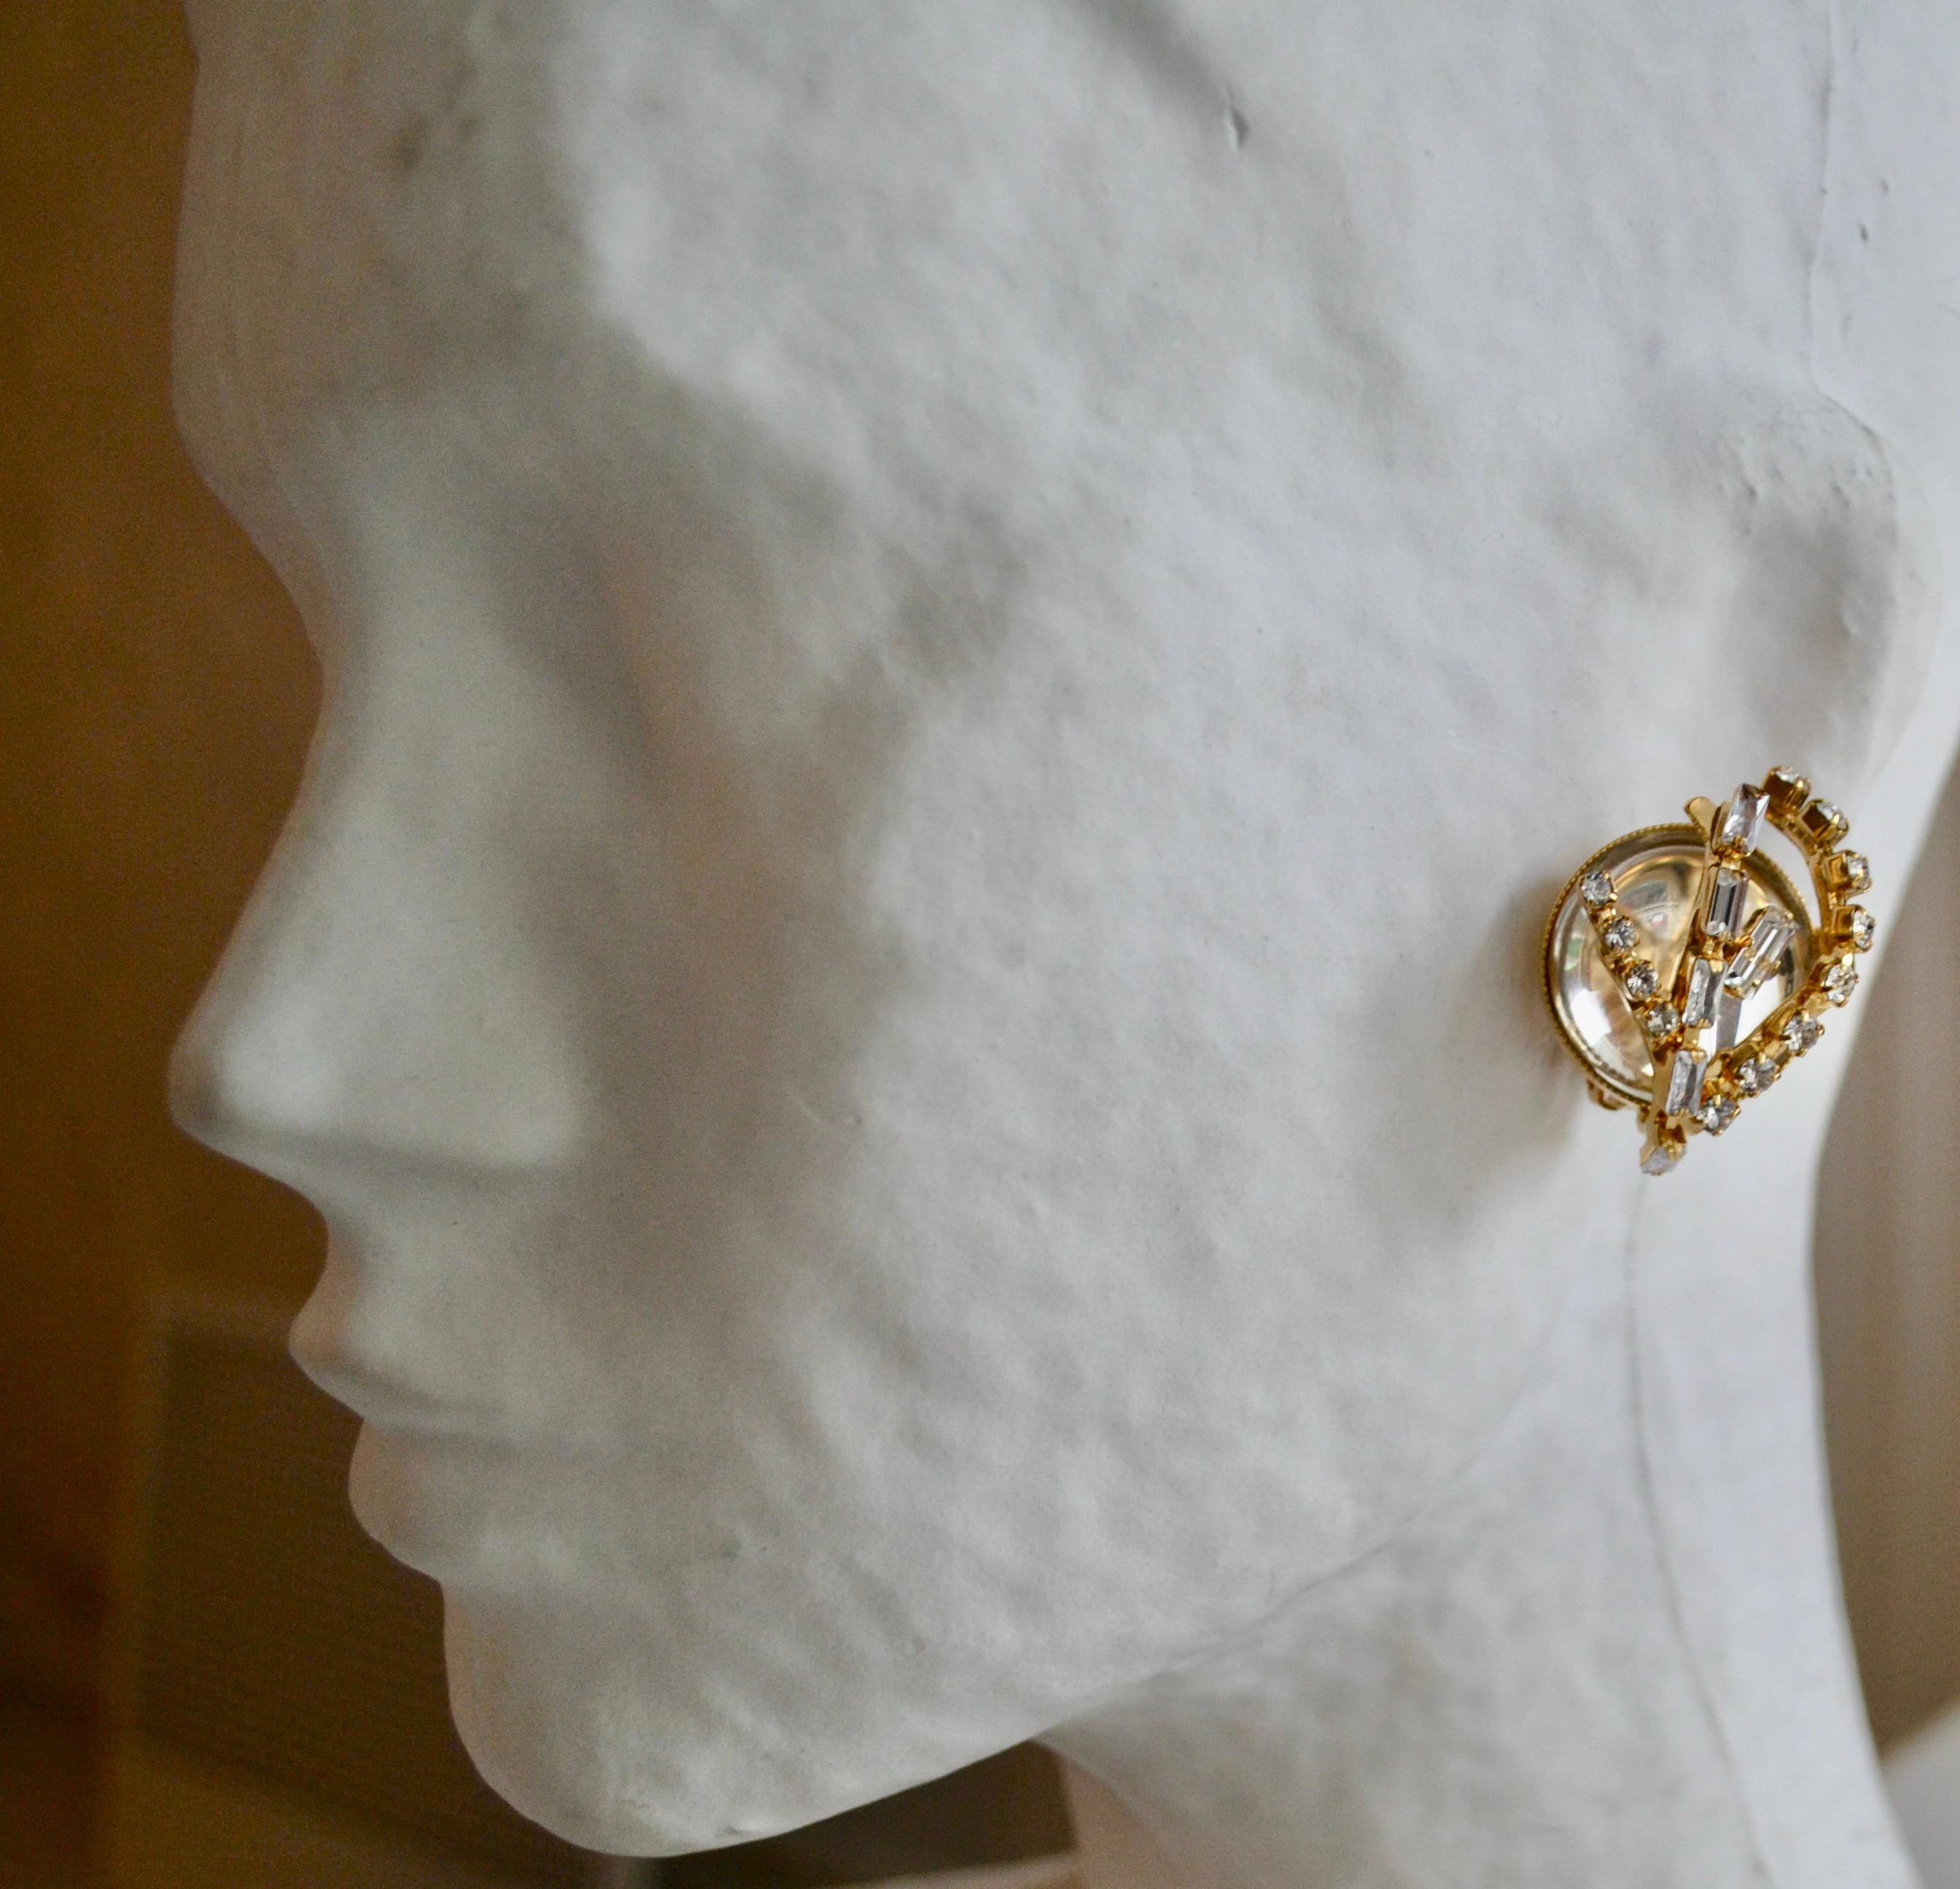 Hergestellt in Frankreich
Philippe Ferrandis, französischer Luxusdesigner. 
Seine Juwelen werden in seinen Pariser Werkstätten von Hand gefertigt, 
in Bezug auf ein außergewöhnliches Know-how.
Clip-Ohrring mit Bergkristall und Swarovski 